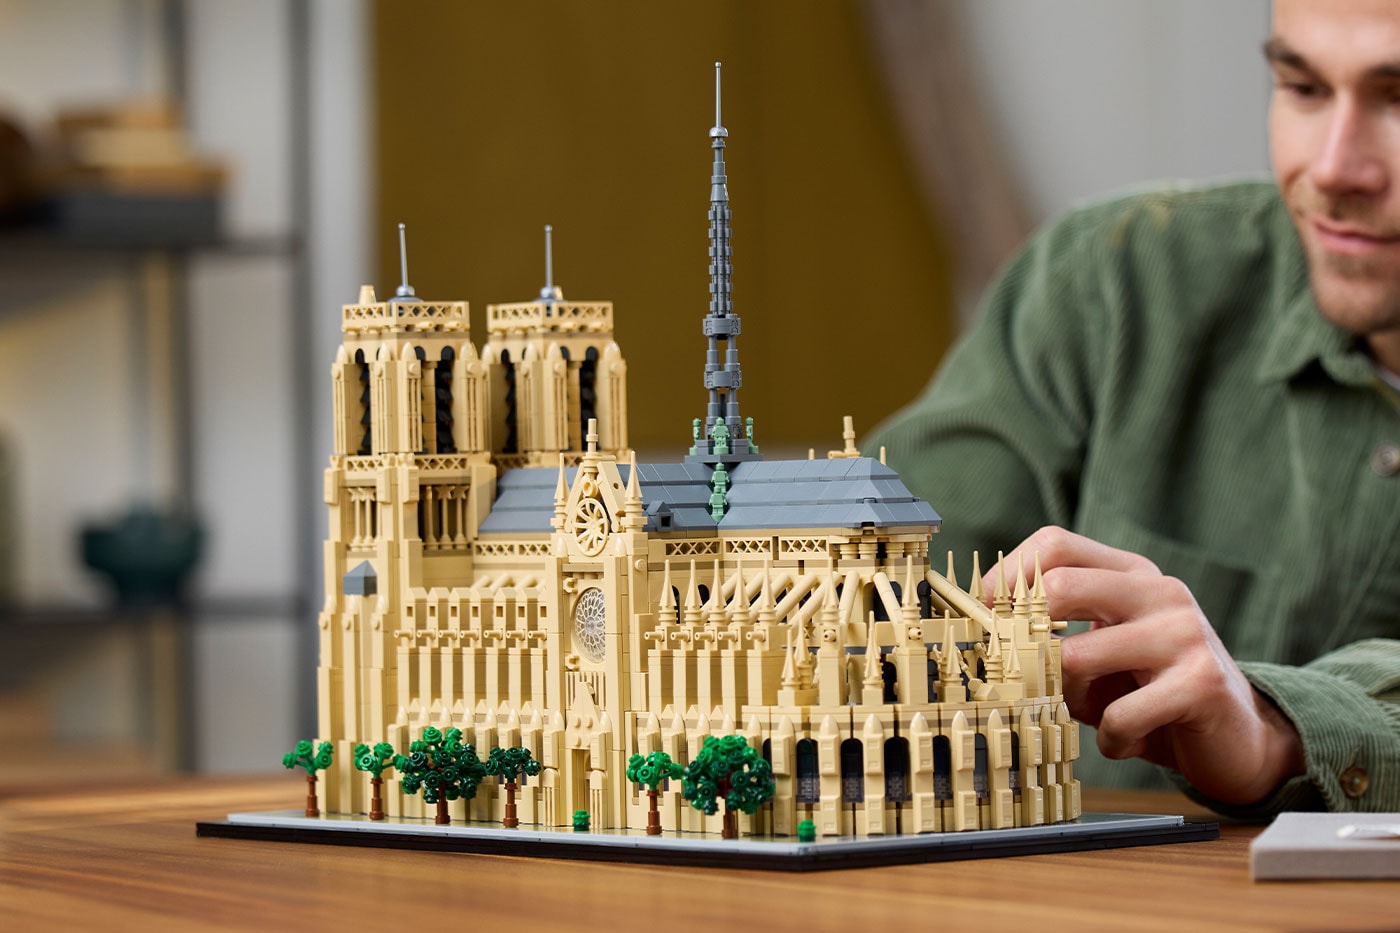 LEGO 推出全新《蒙娜麗莎》畫像與巴黎聖母院積木模型